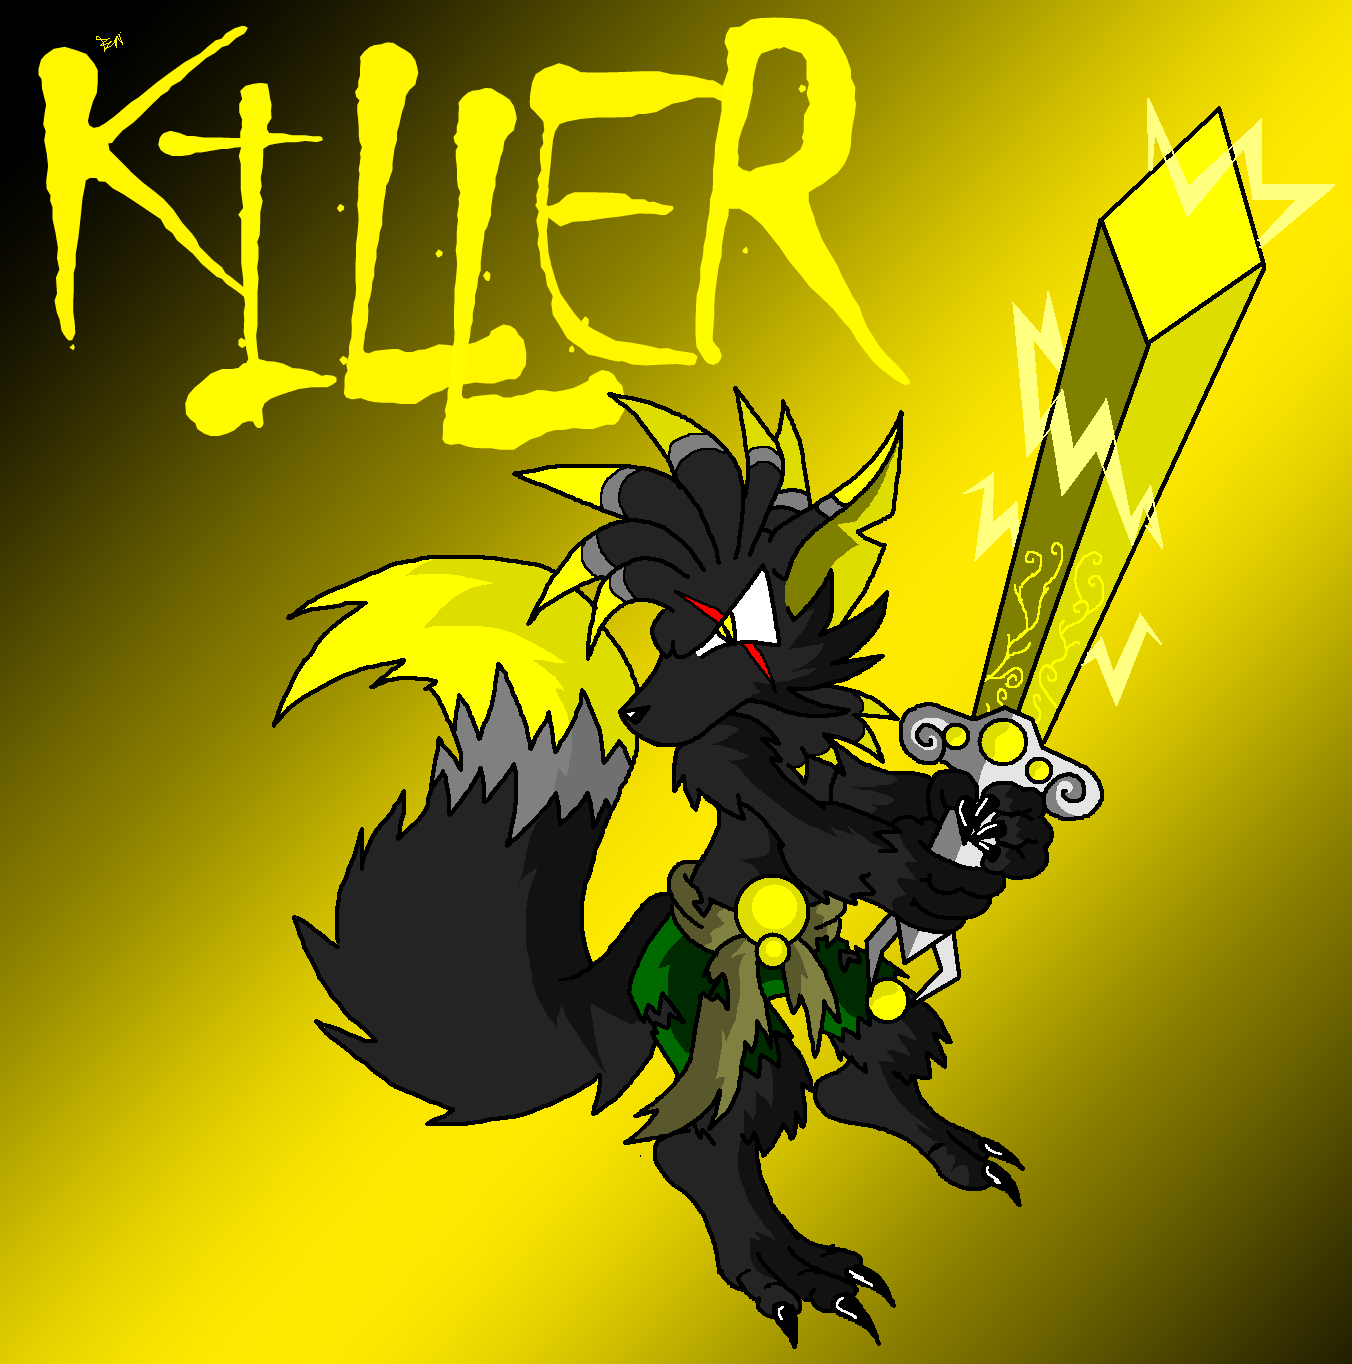 Werewolf Killer by Edge14